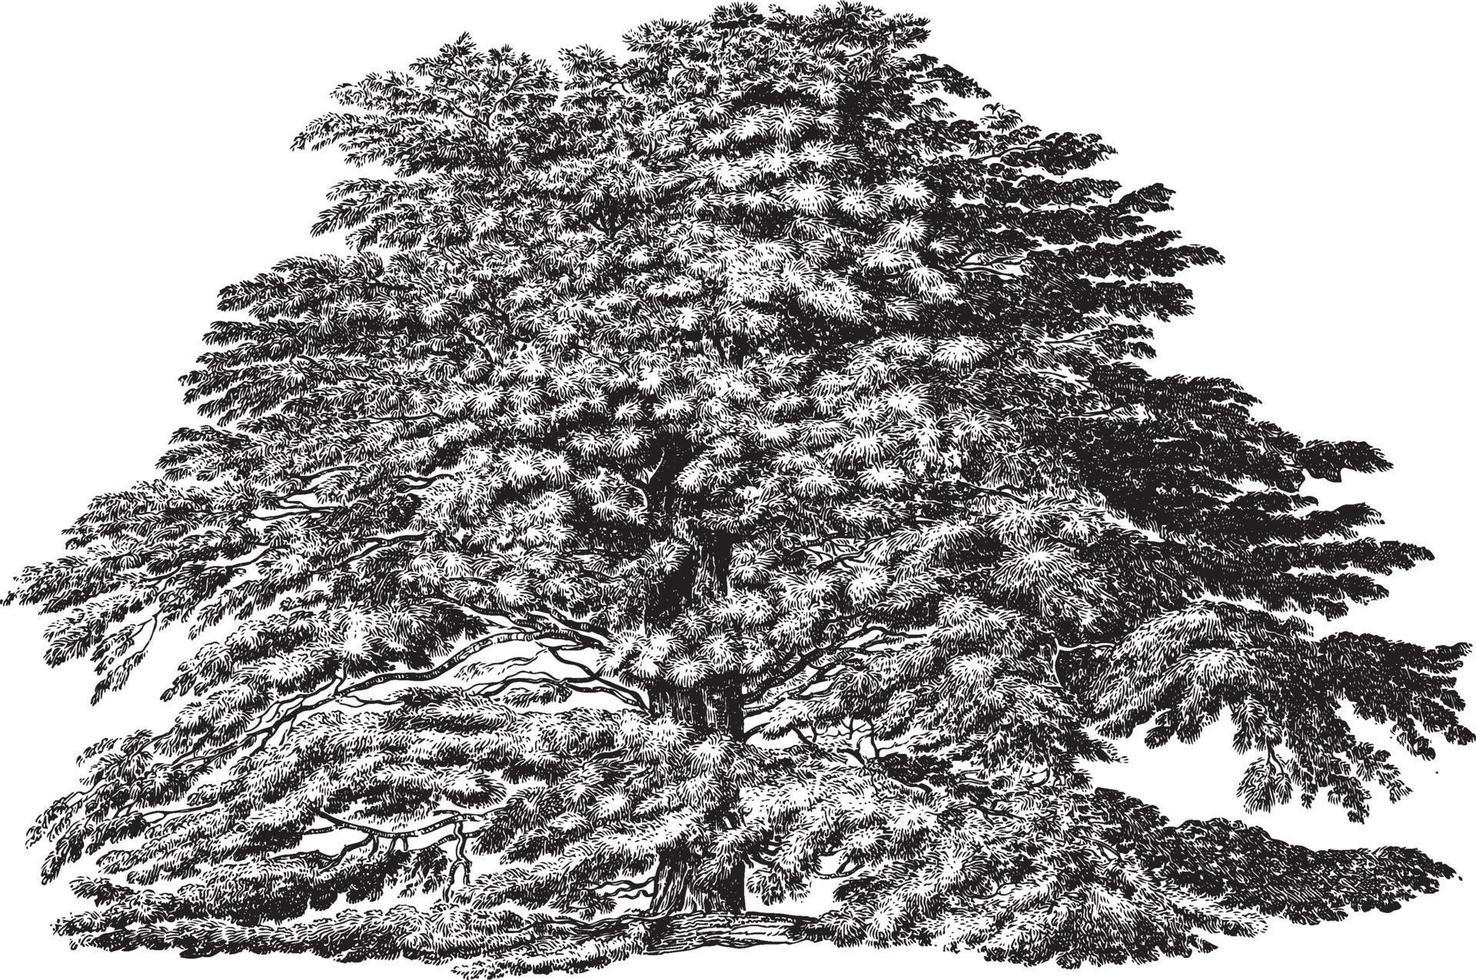 cederträ av libanon träd vintage illustrationer vektor